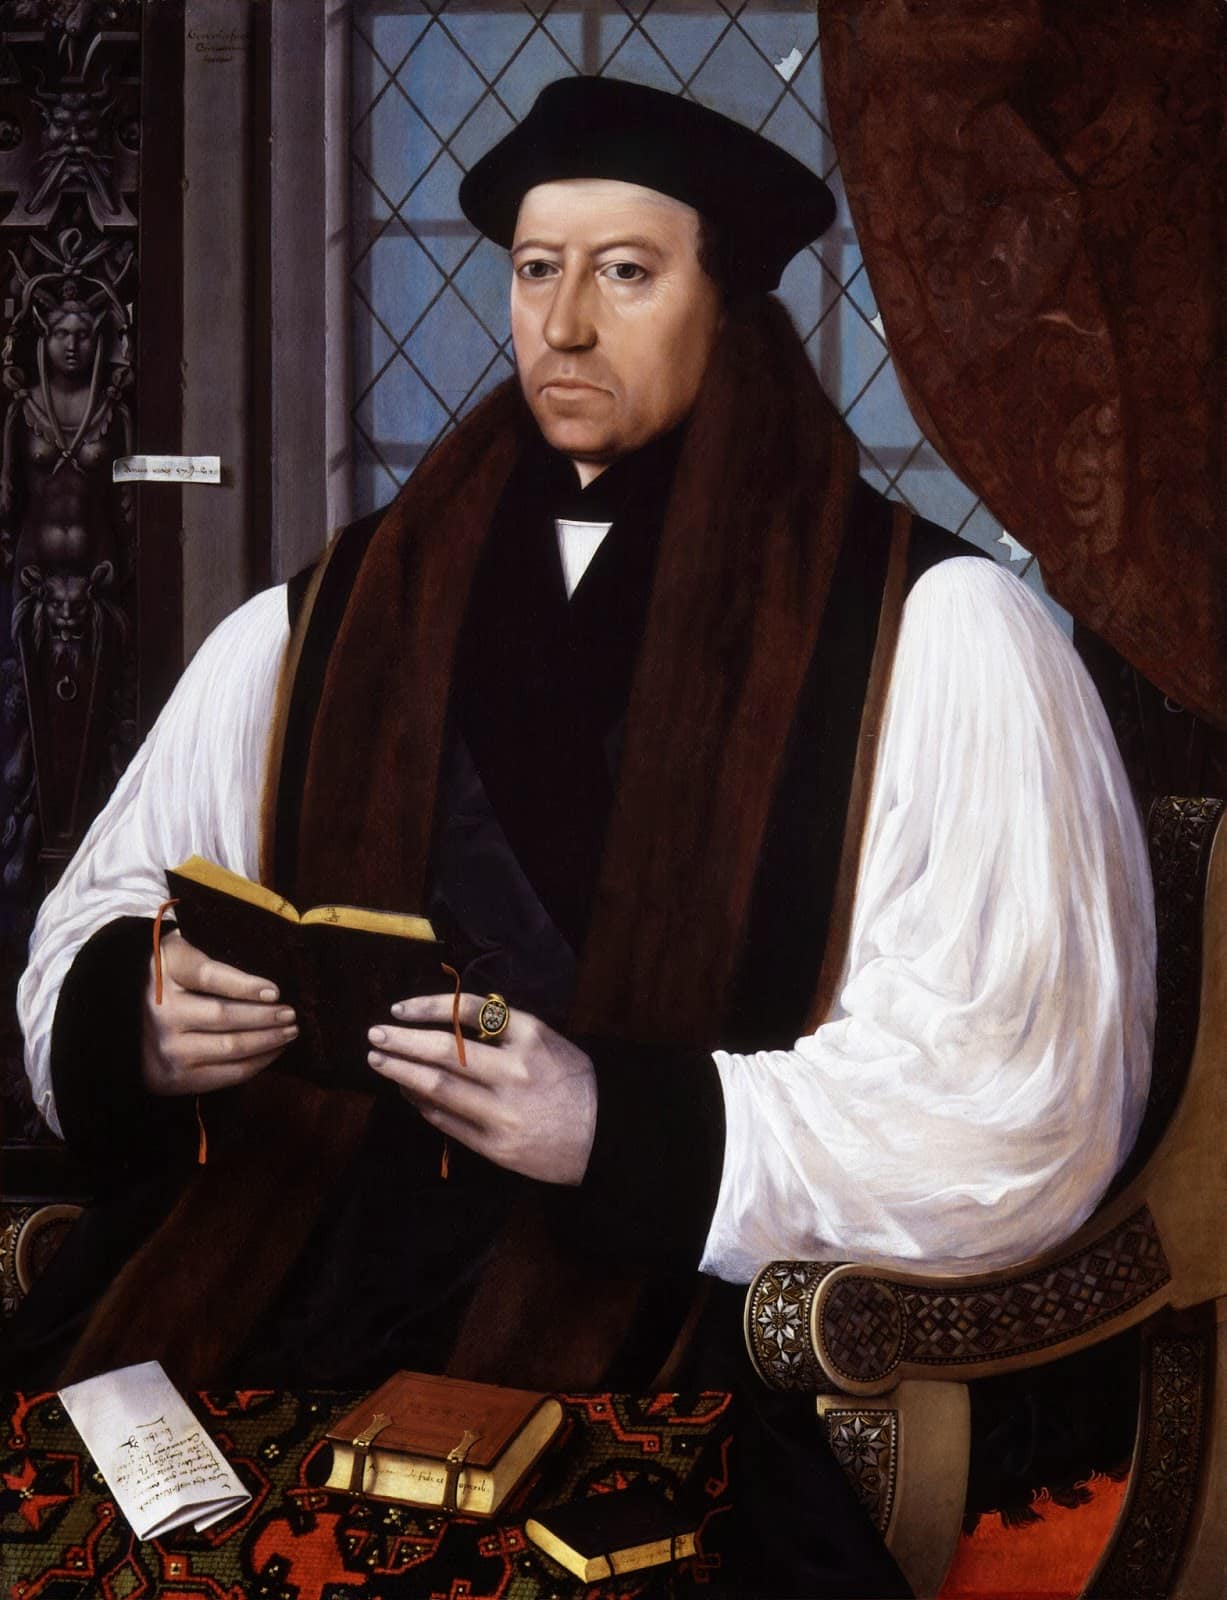 May 3, 1536 - Thomas Cranmer Defends Anne Boleyn